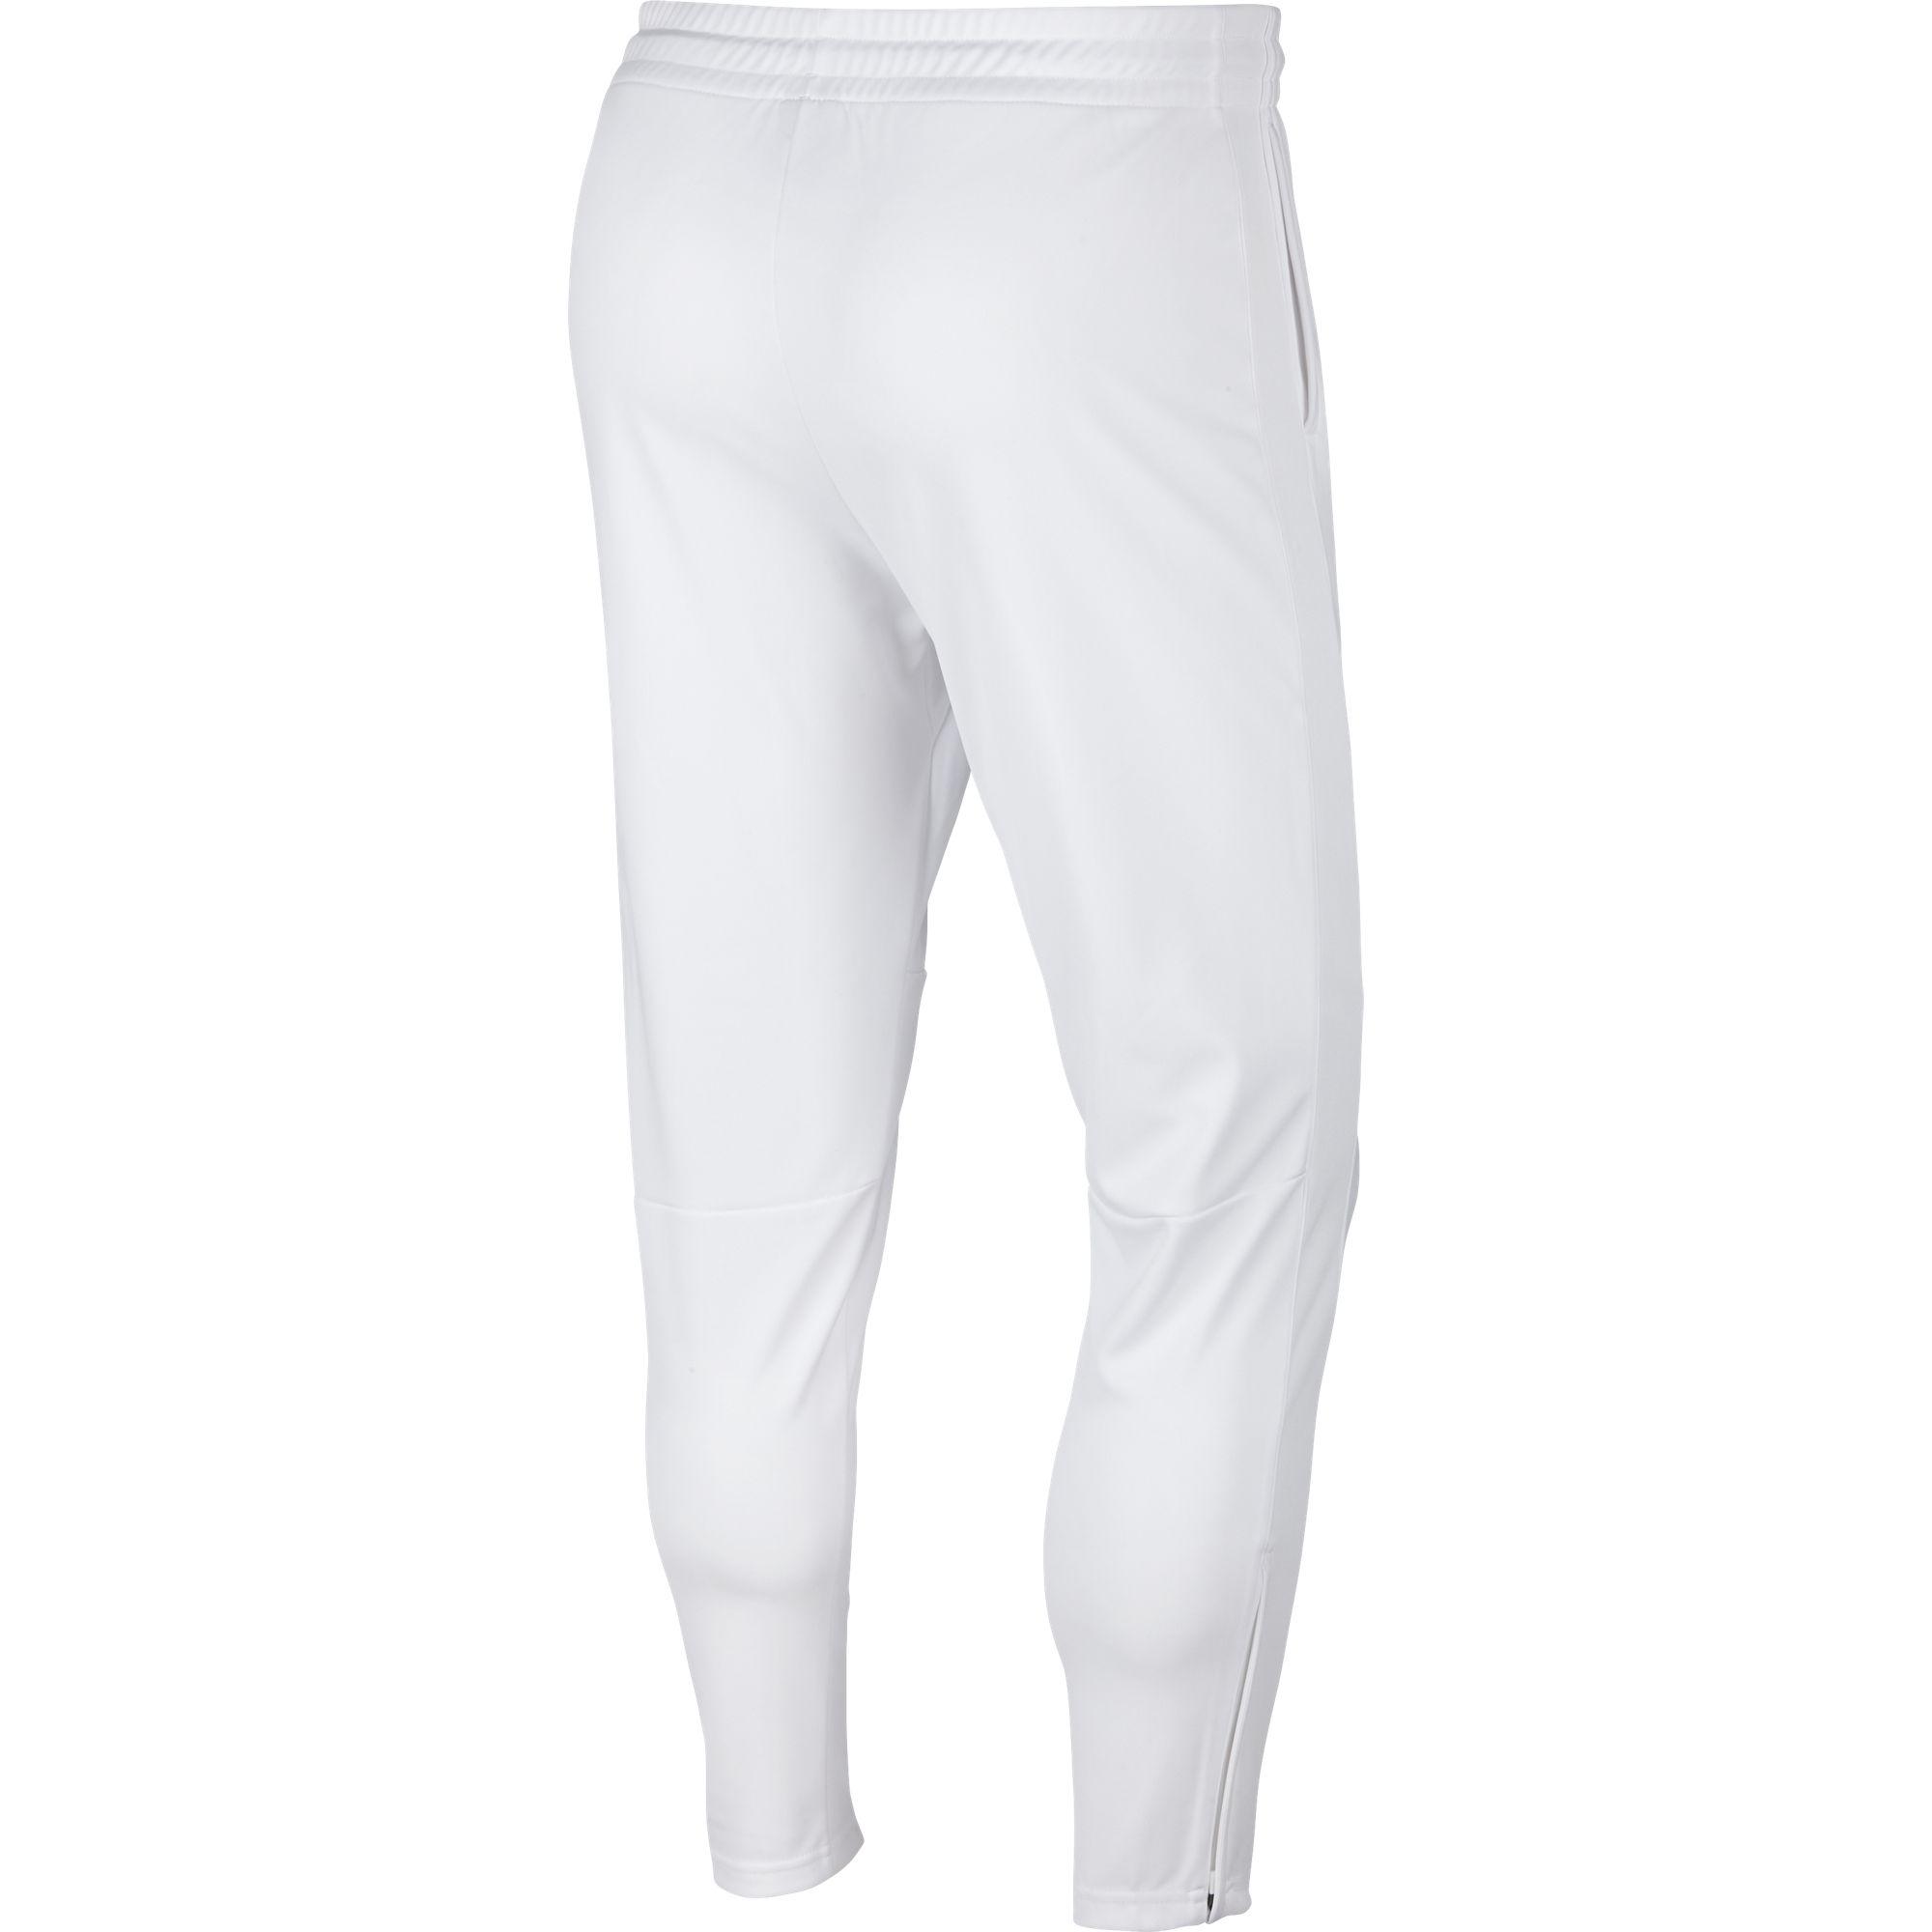 Nike Mens Tennis Pants - White - Tennisnuts.com